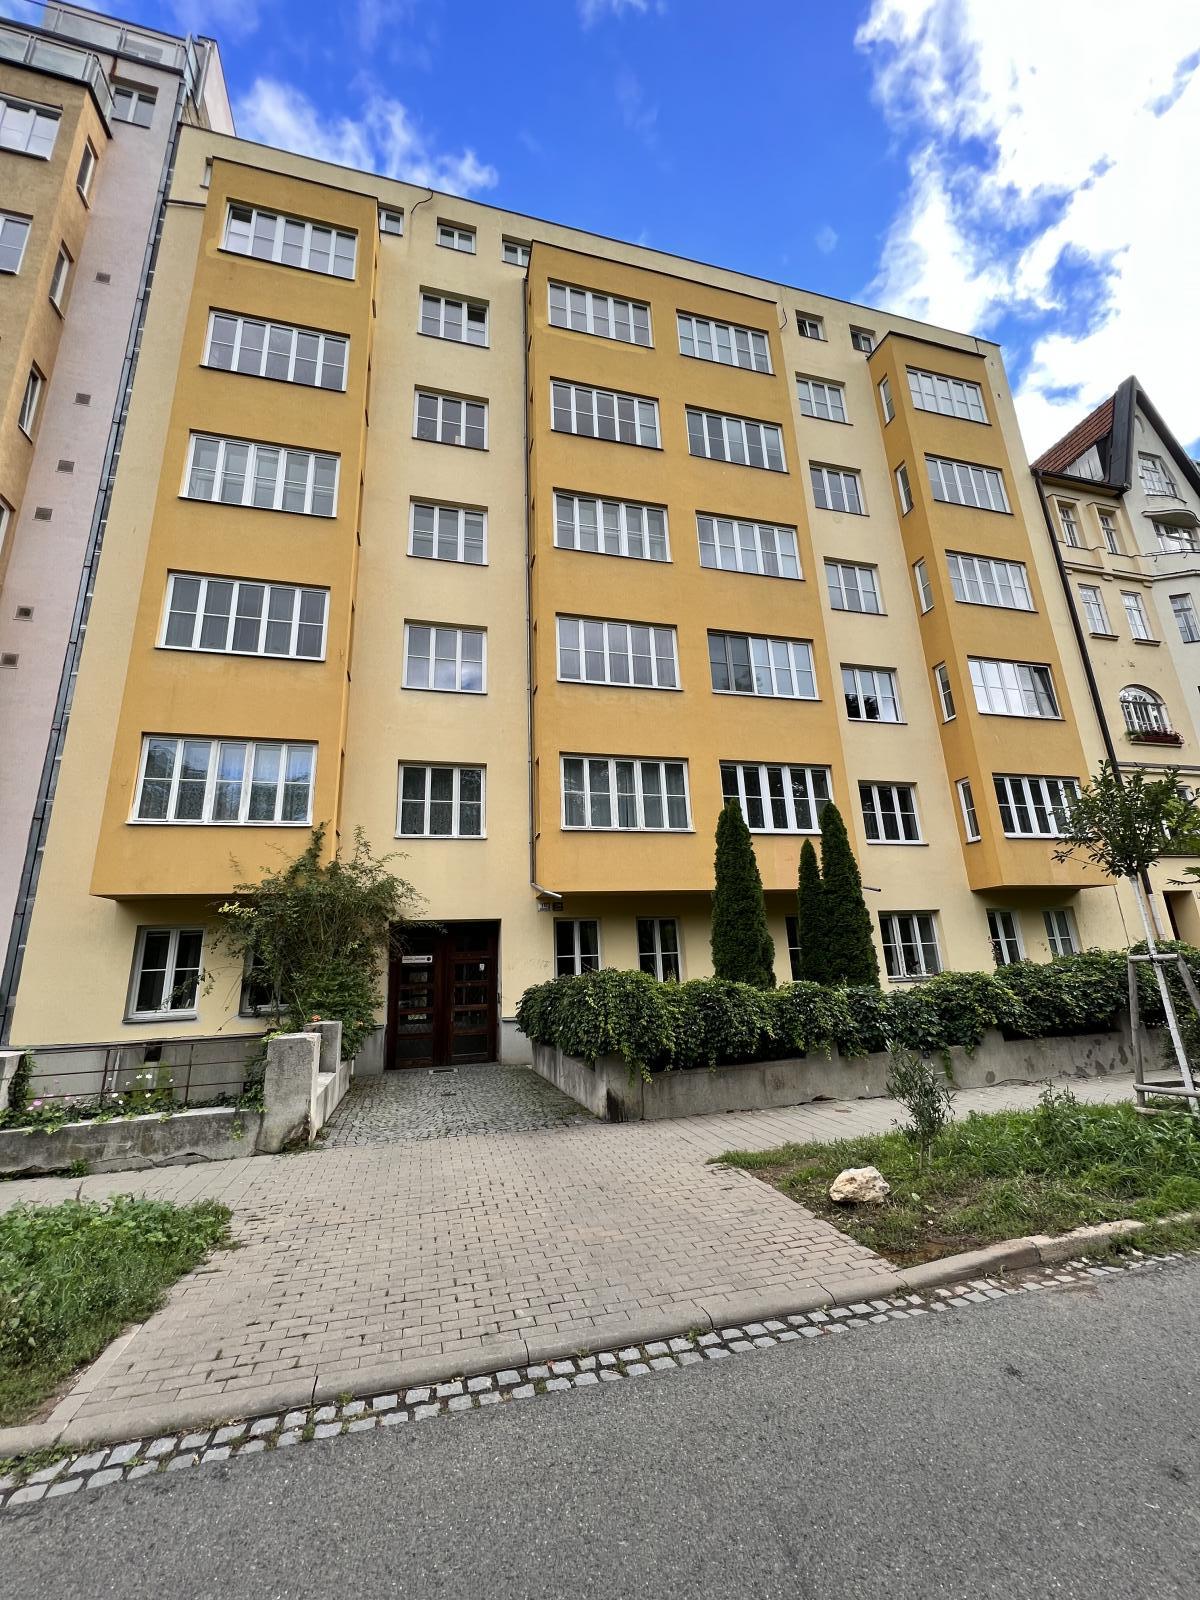 OV 3+kk Brno  Veveří, ul.Botanická,  CP 120,07 m2, k celkové rekonstrukci, vhodné na kanceláře, obrázek č. 1